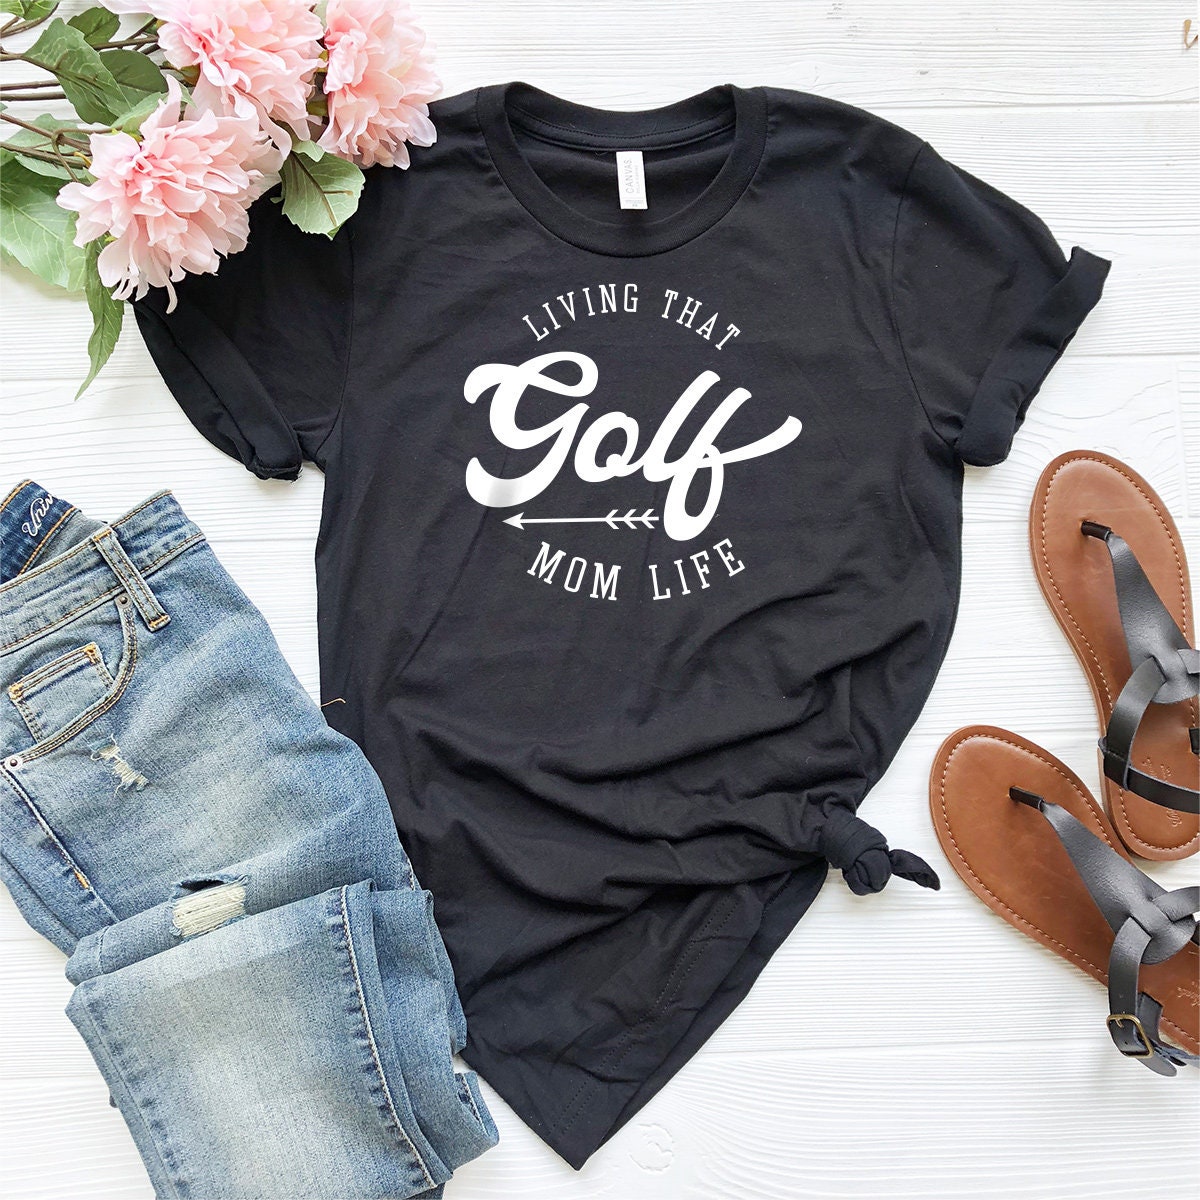 Golf Mom Shirt,Golf Mom Tee,Golf Mom T-Shirts,Golf Mama Shirts,Golf Mom,Golf Mama - Fastdeliverytees.com